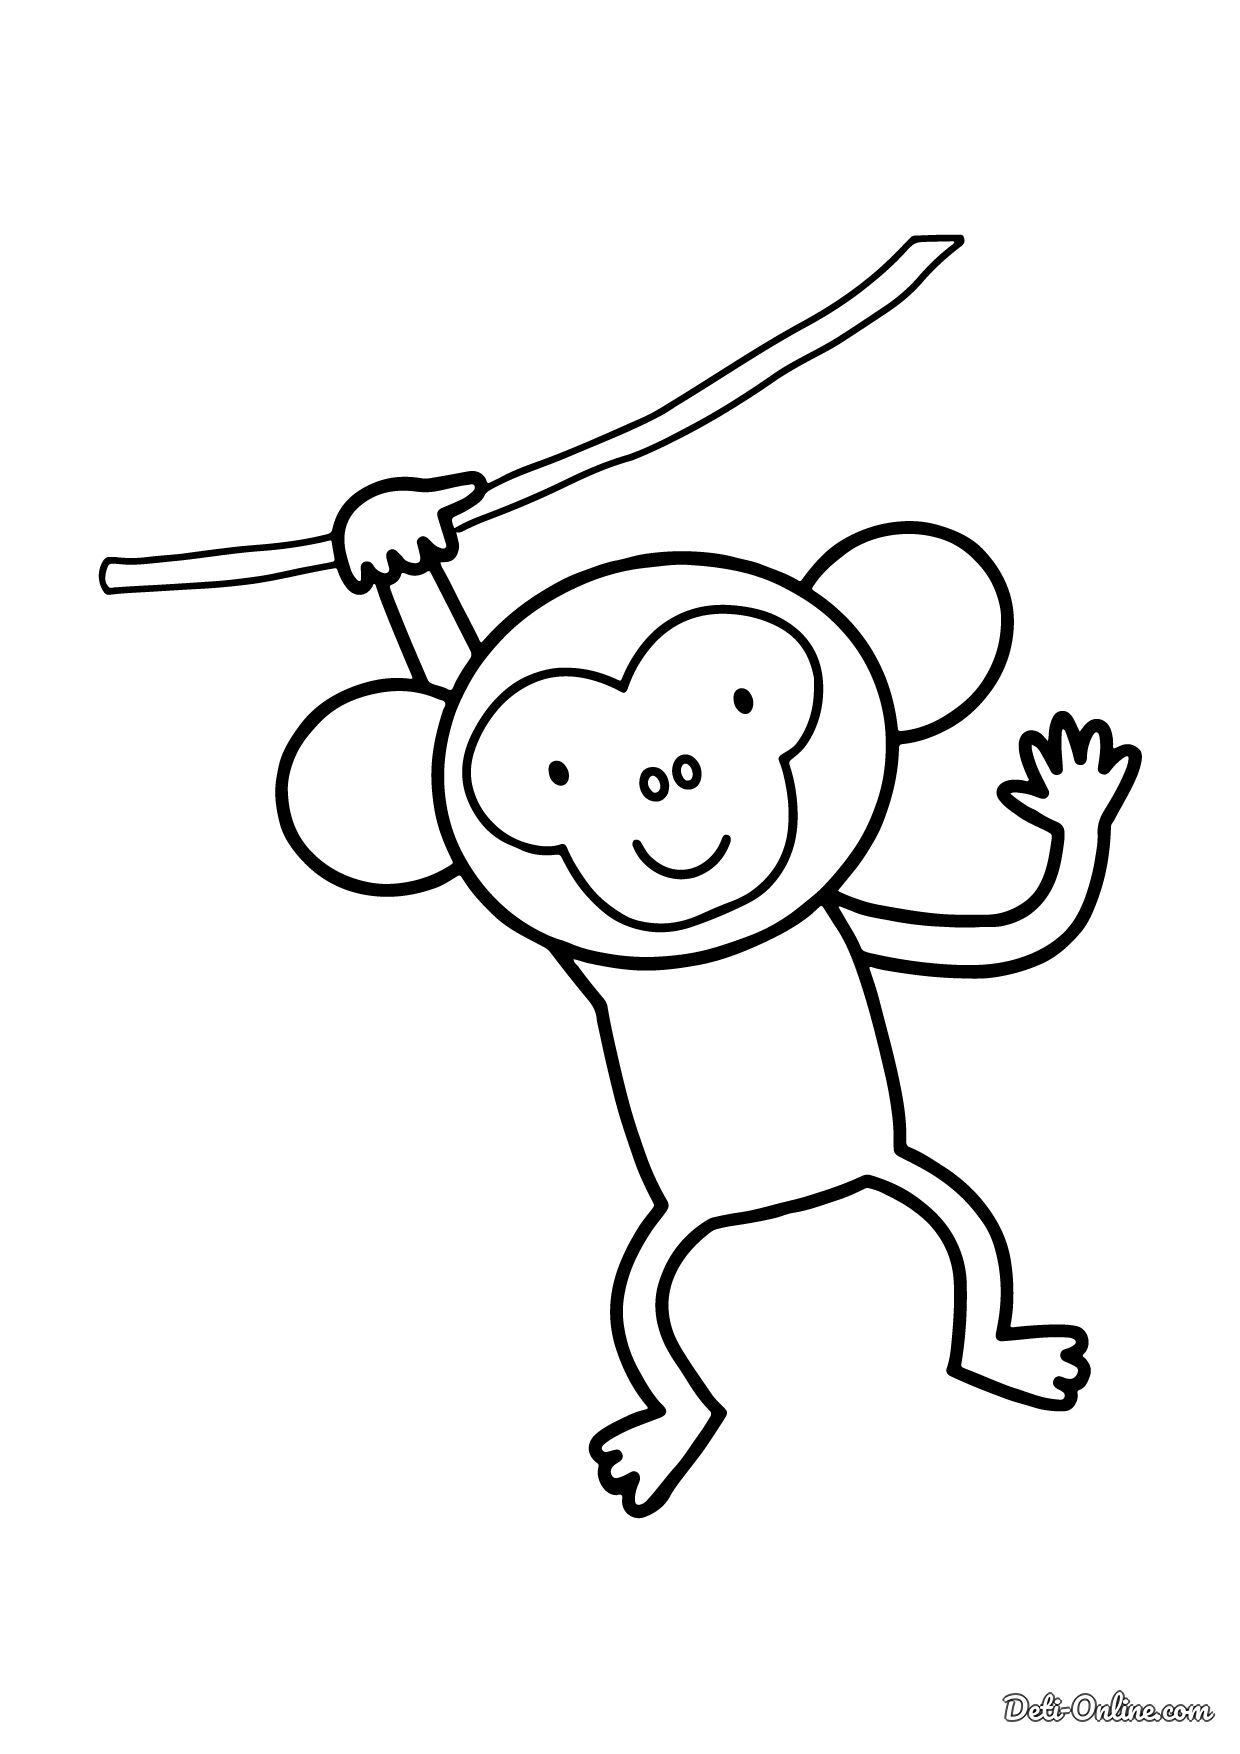 Раскраска девочка обезьянка распечатать